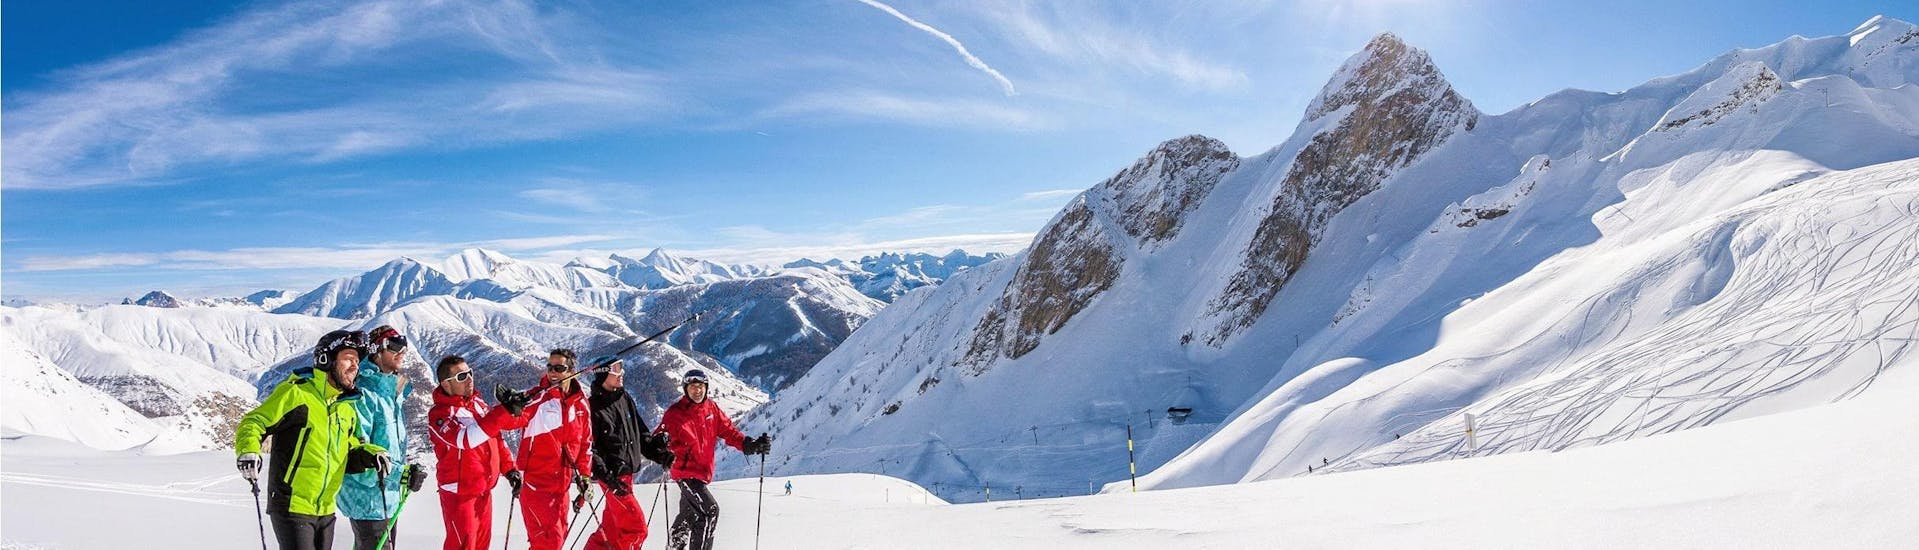 Des skieurs contemplent le panorama sur le domaine de Val d'Allos - La Foux où l'école de ski ESF La Foux d'Allos offrent des cours de ski.